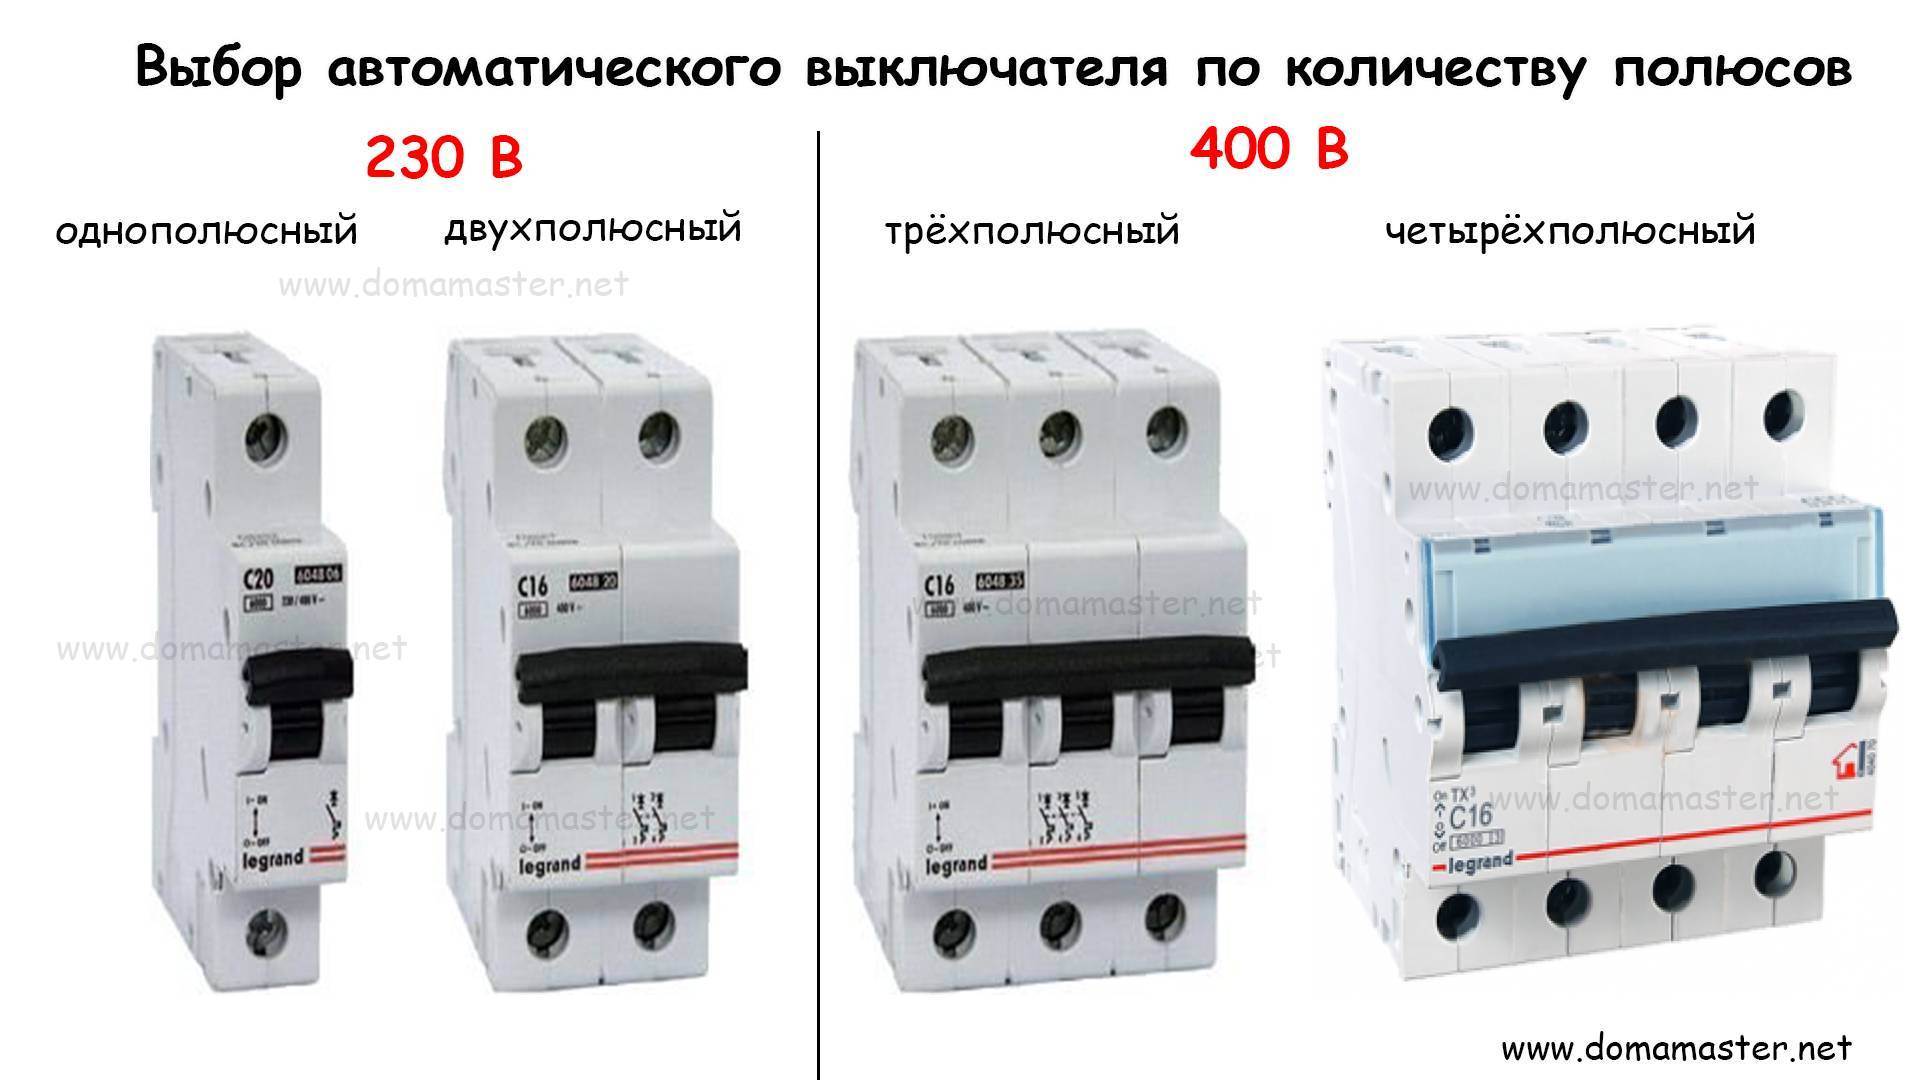 Производство автоматических выключателей